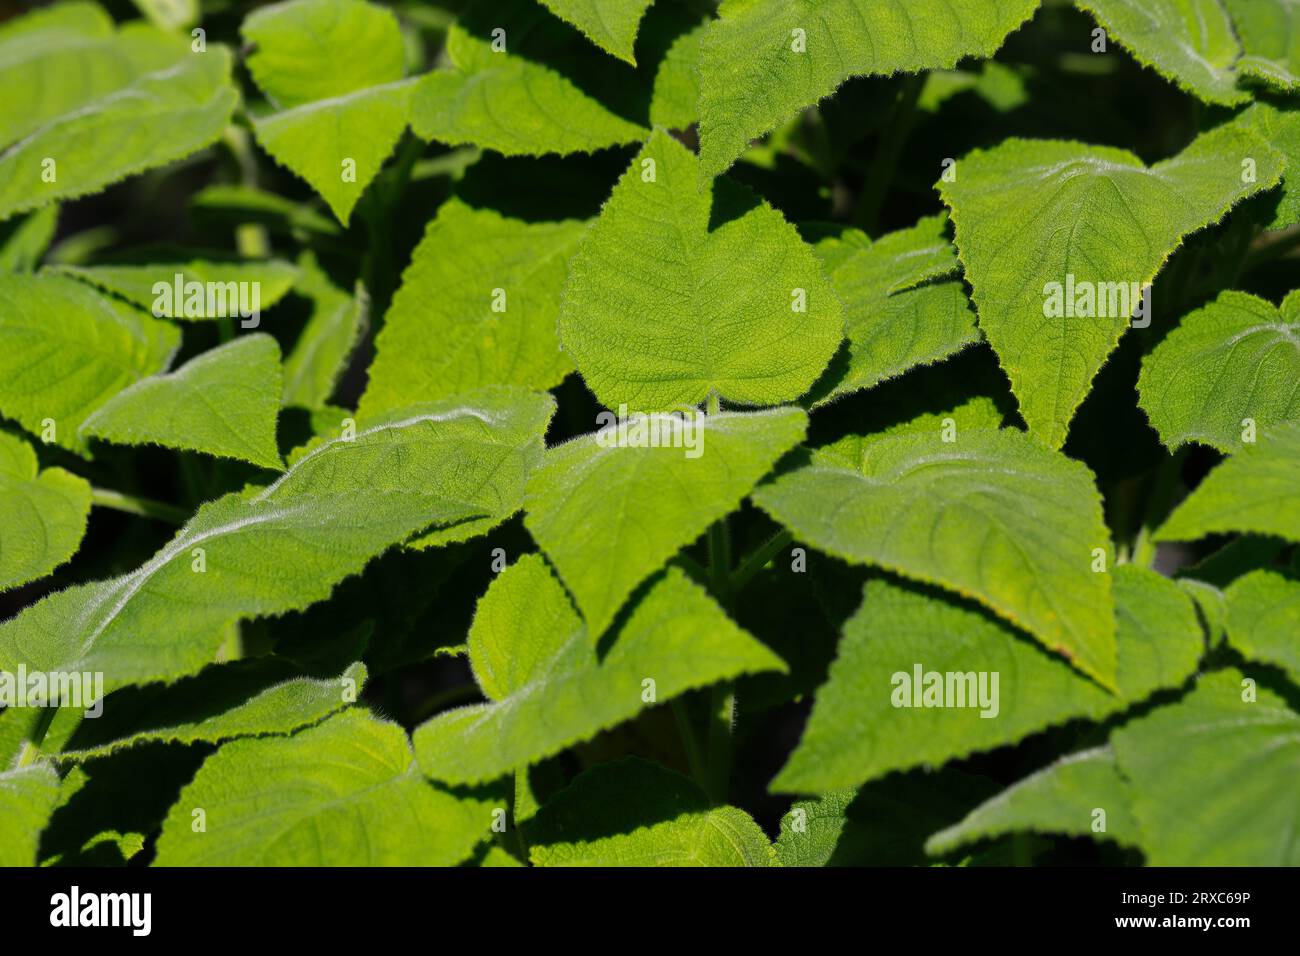 Blick auf salvia dorisiana, den nach Früchten duftenden Salbei im Gemüsegarten. Fotografie der lebendigen Natur. Stockfoto